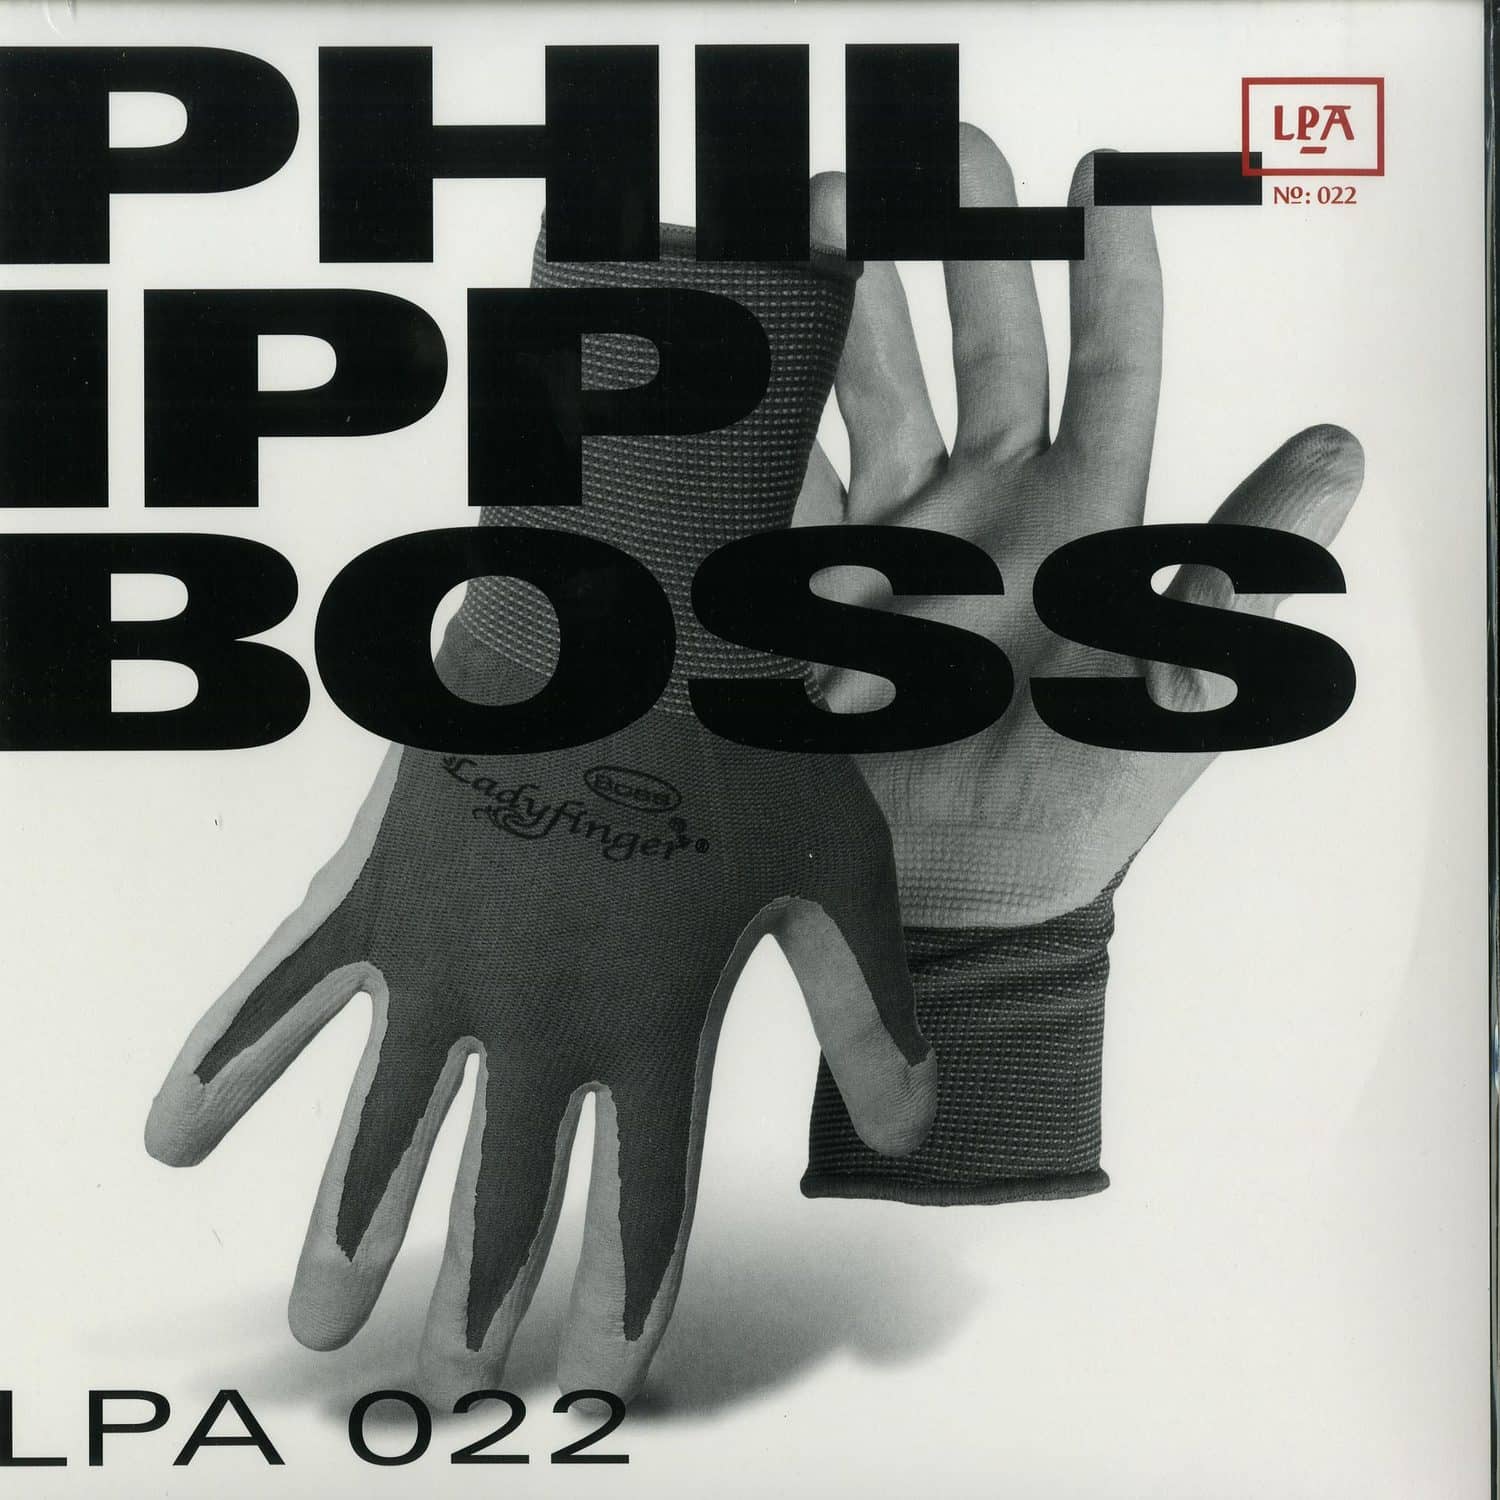 Philipp Boss - BOSS 